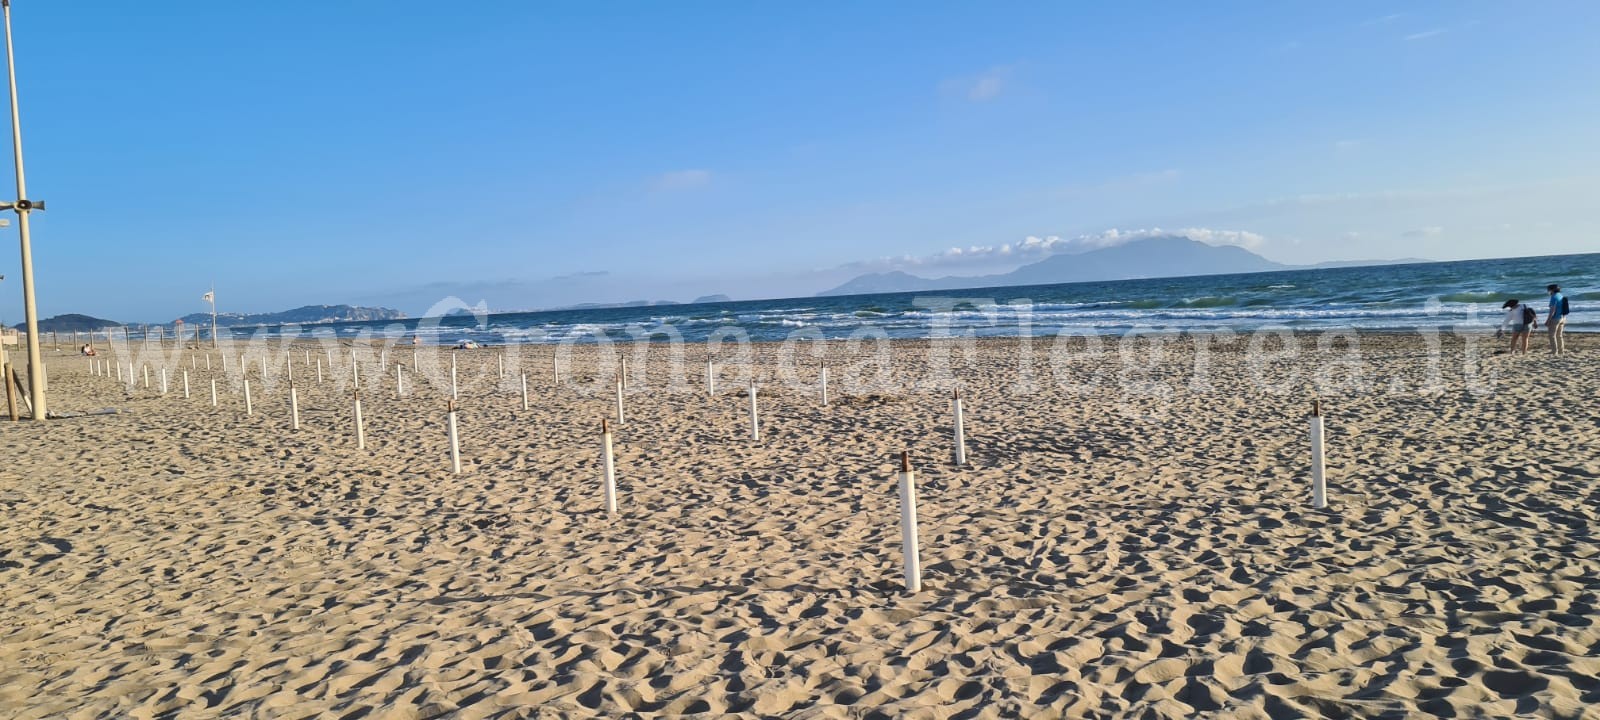 L’appello dei balneatori ai sindaci: «Non chiudete le spiagge. Vigilatele e gestitele come dice la norma»